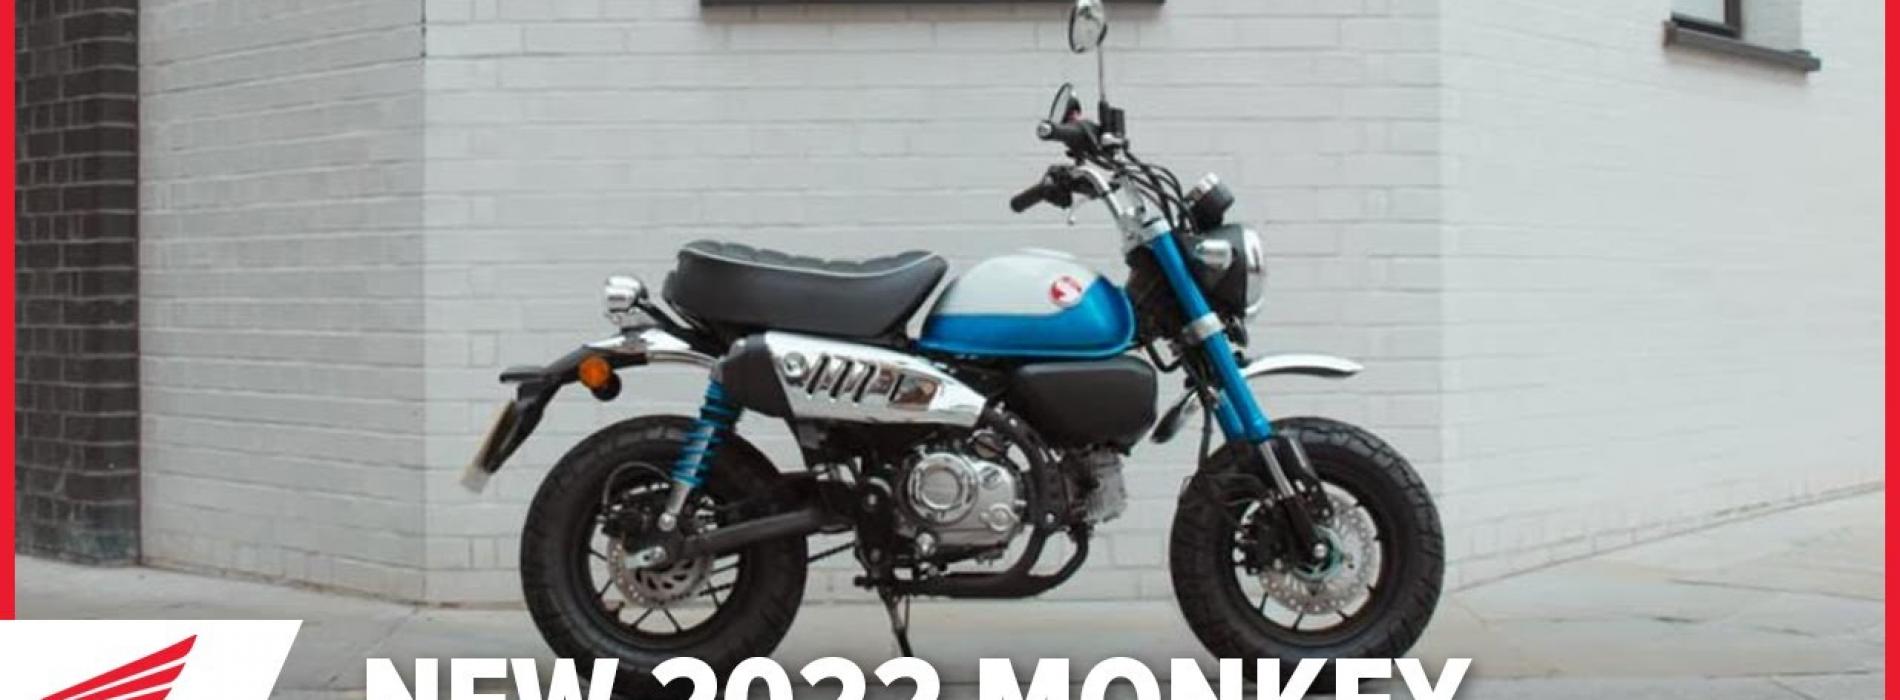 Nova Honda Monkey 2022 (Vídeo Oficial)